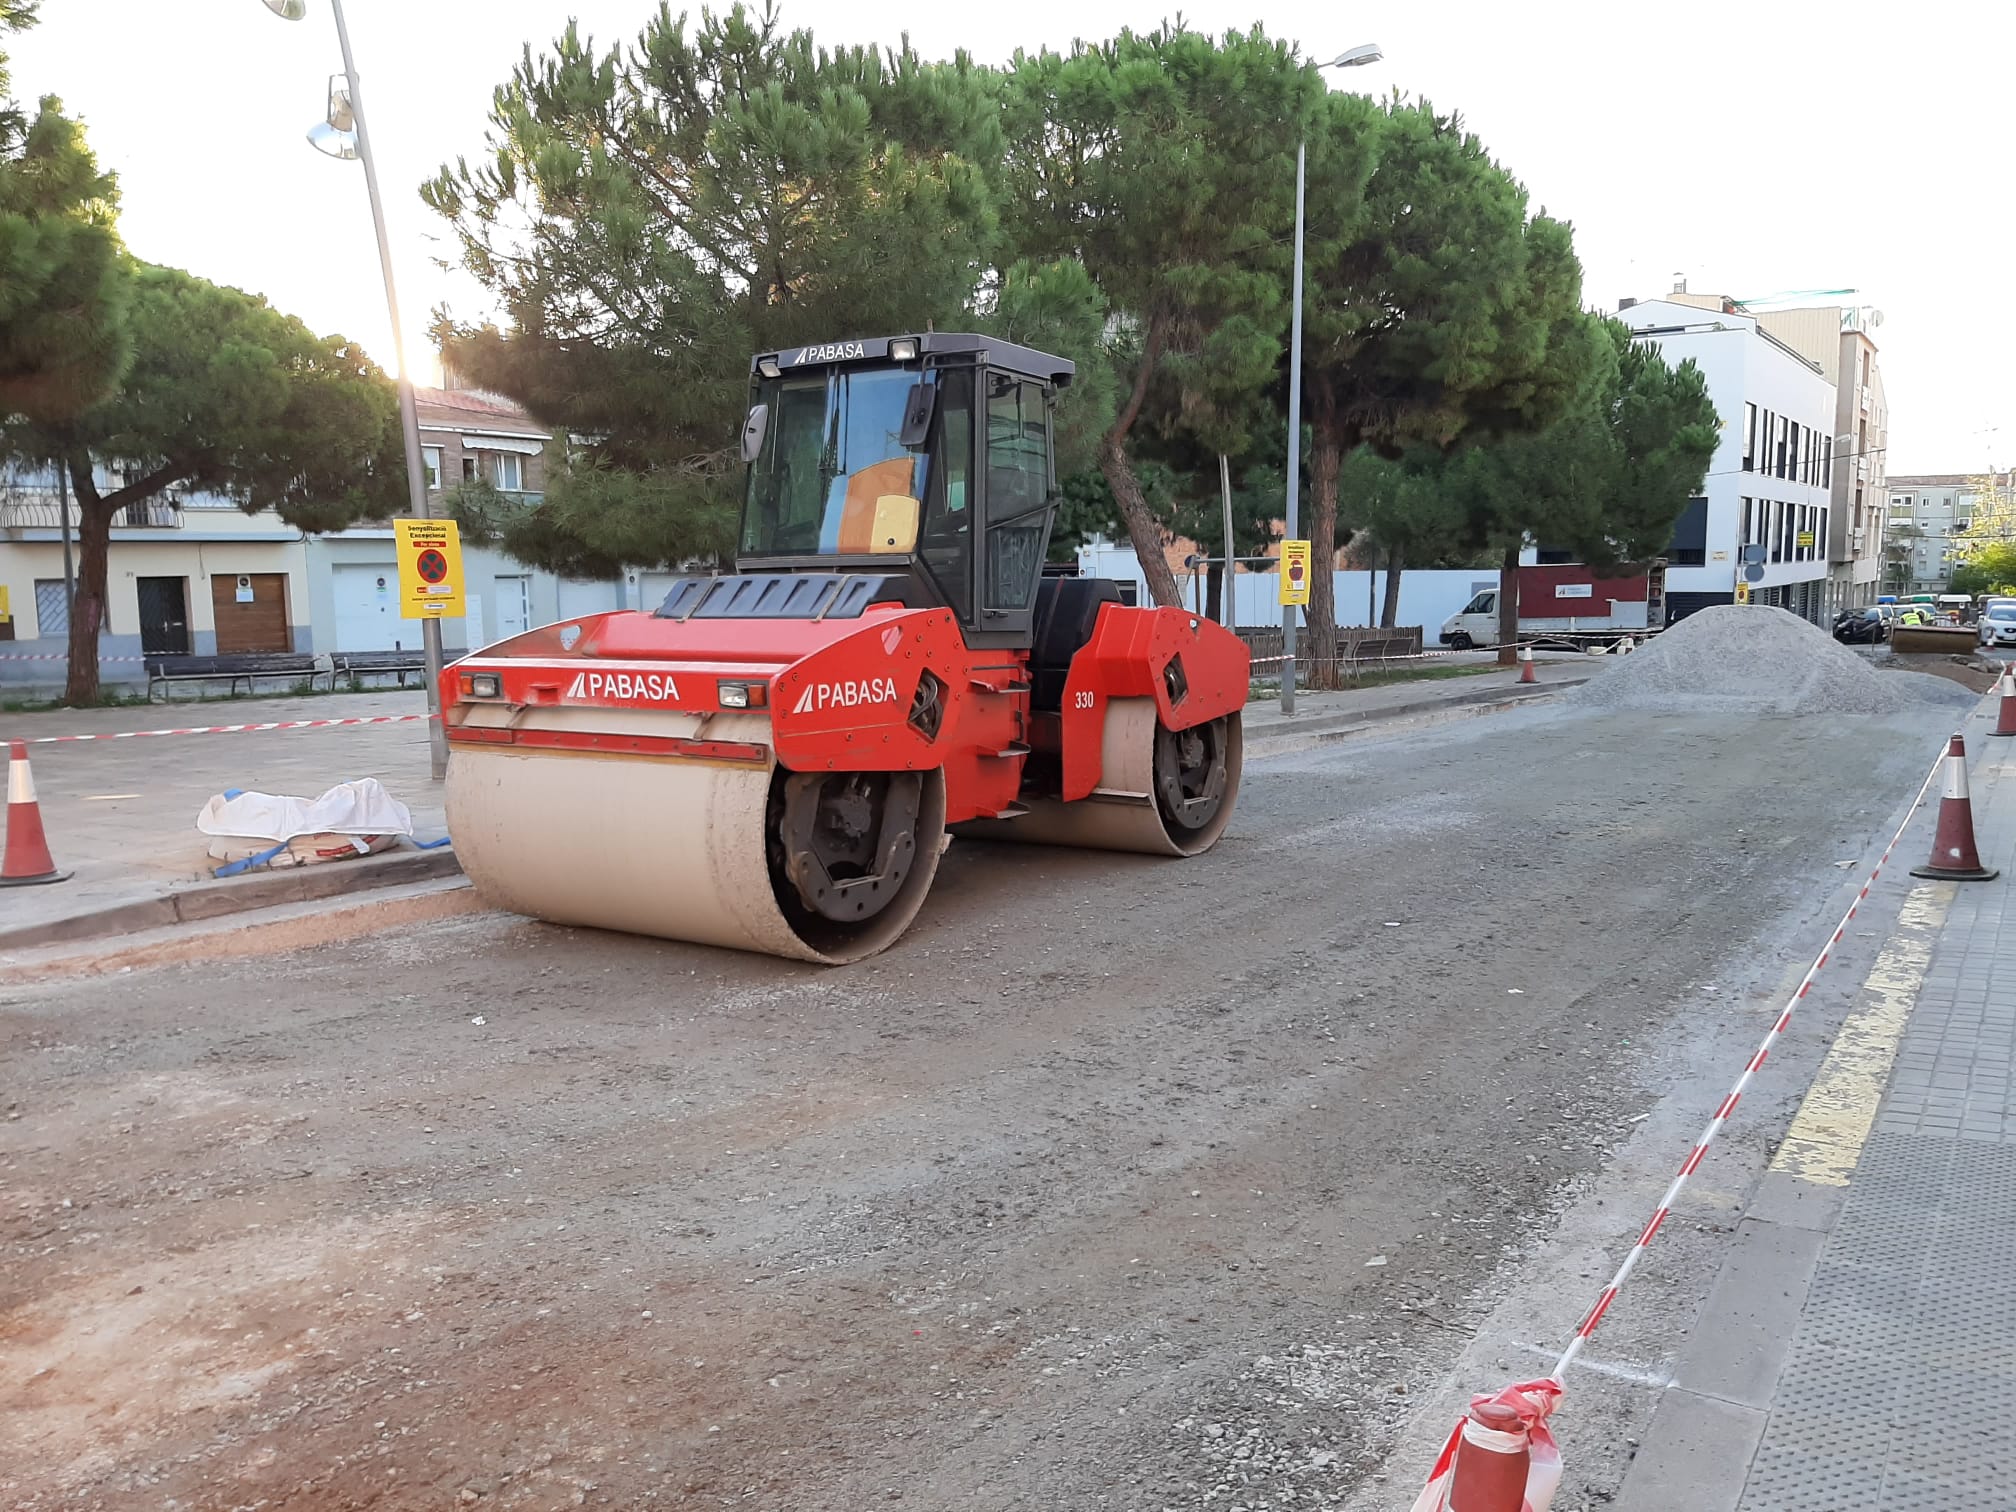 S’aprova el projecte de renovació del paviment de calçades i carrers de la ciutat